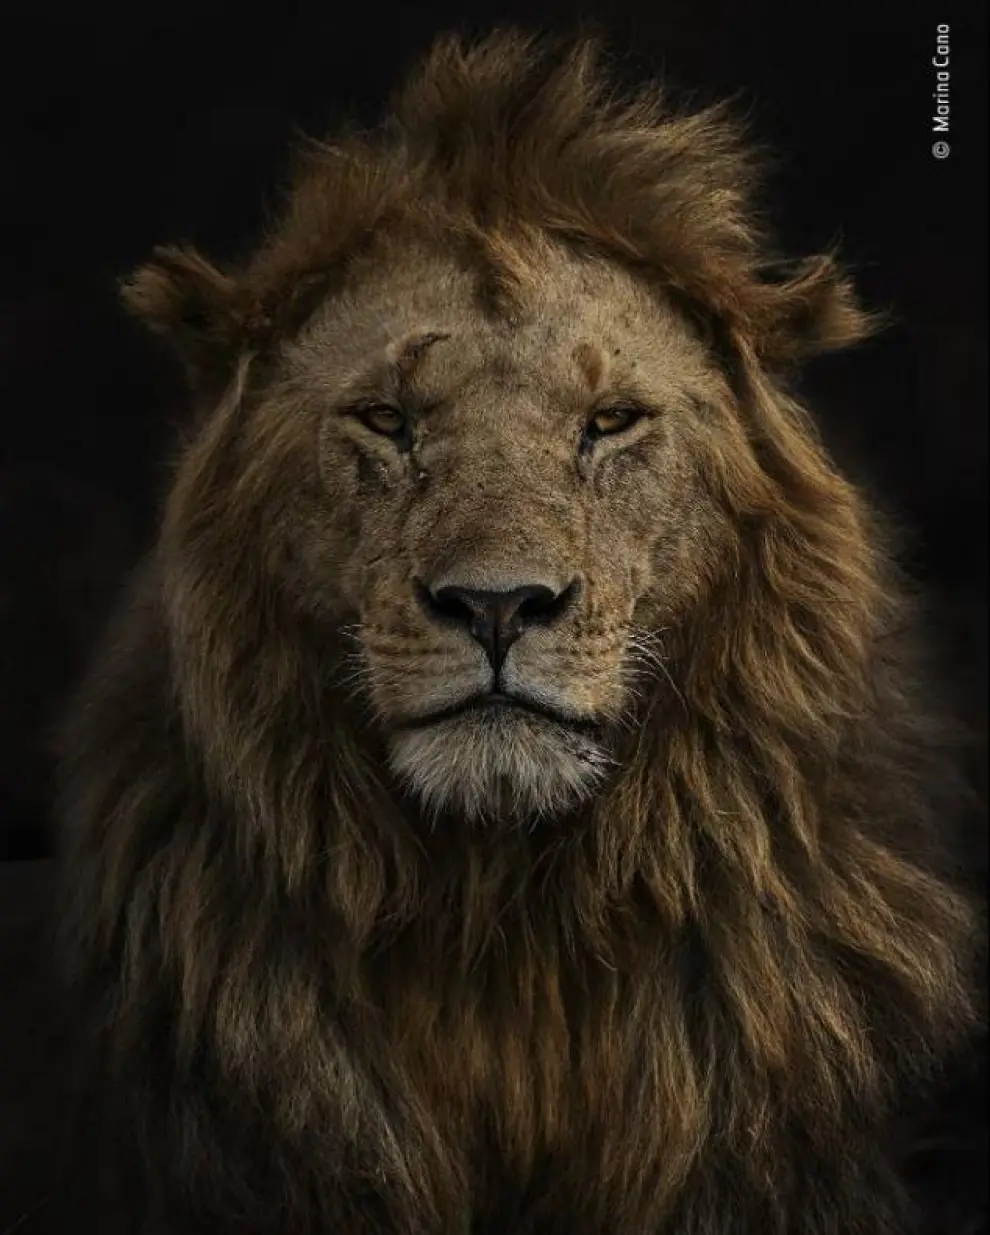 'Retrato de Olobor' muestra el león denominado Olobor en la Reserva Nacional Maasai Mara de Kenia.